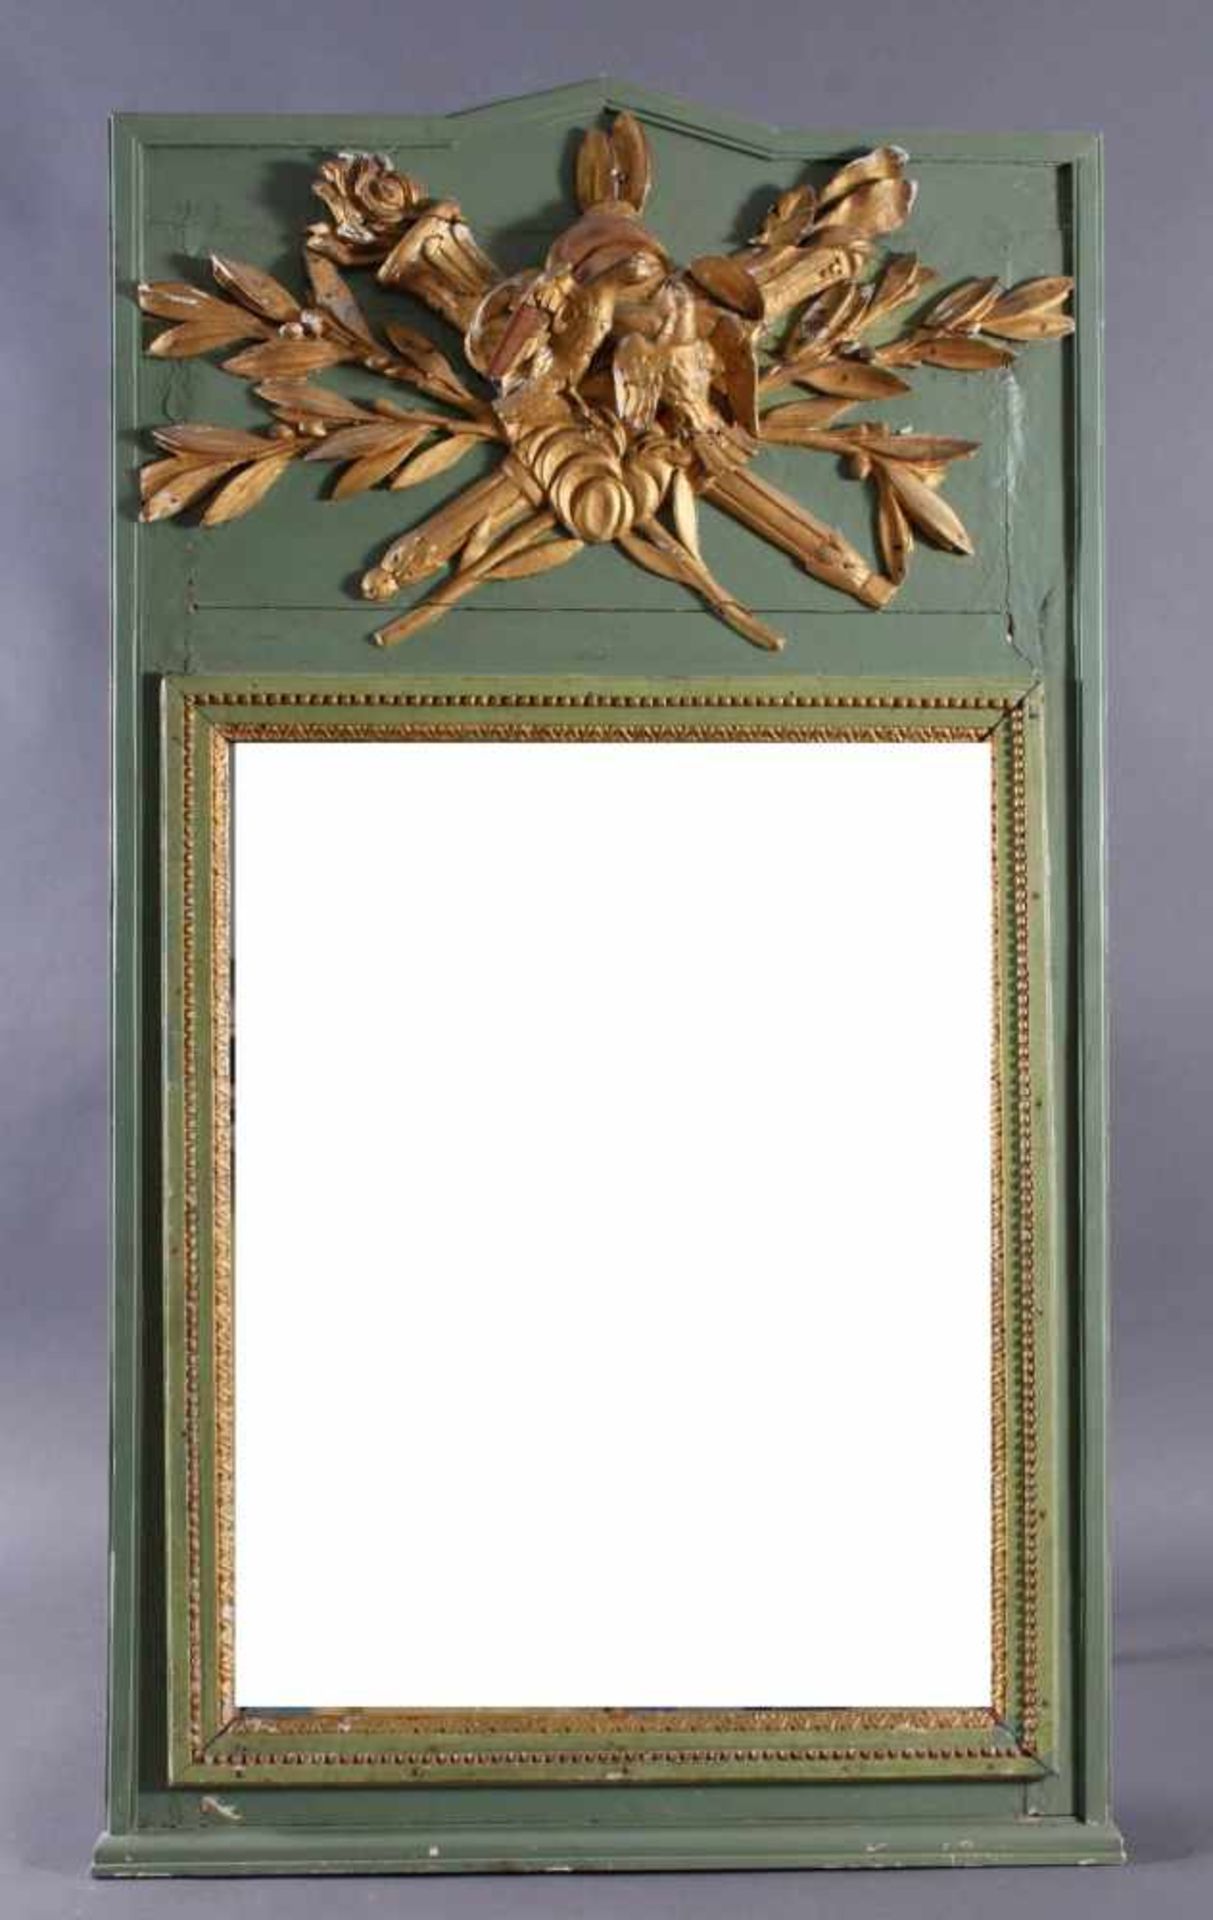 Trumeau, Frankreich 18. JahrhundertHolz, grün und gold gefasst, profilierte Spiegelrahmen, oberer